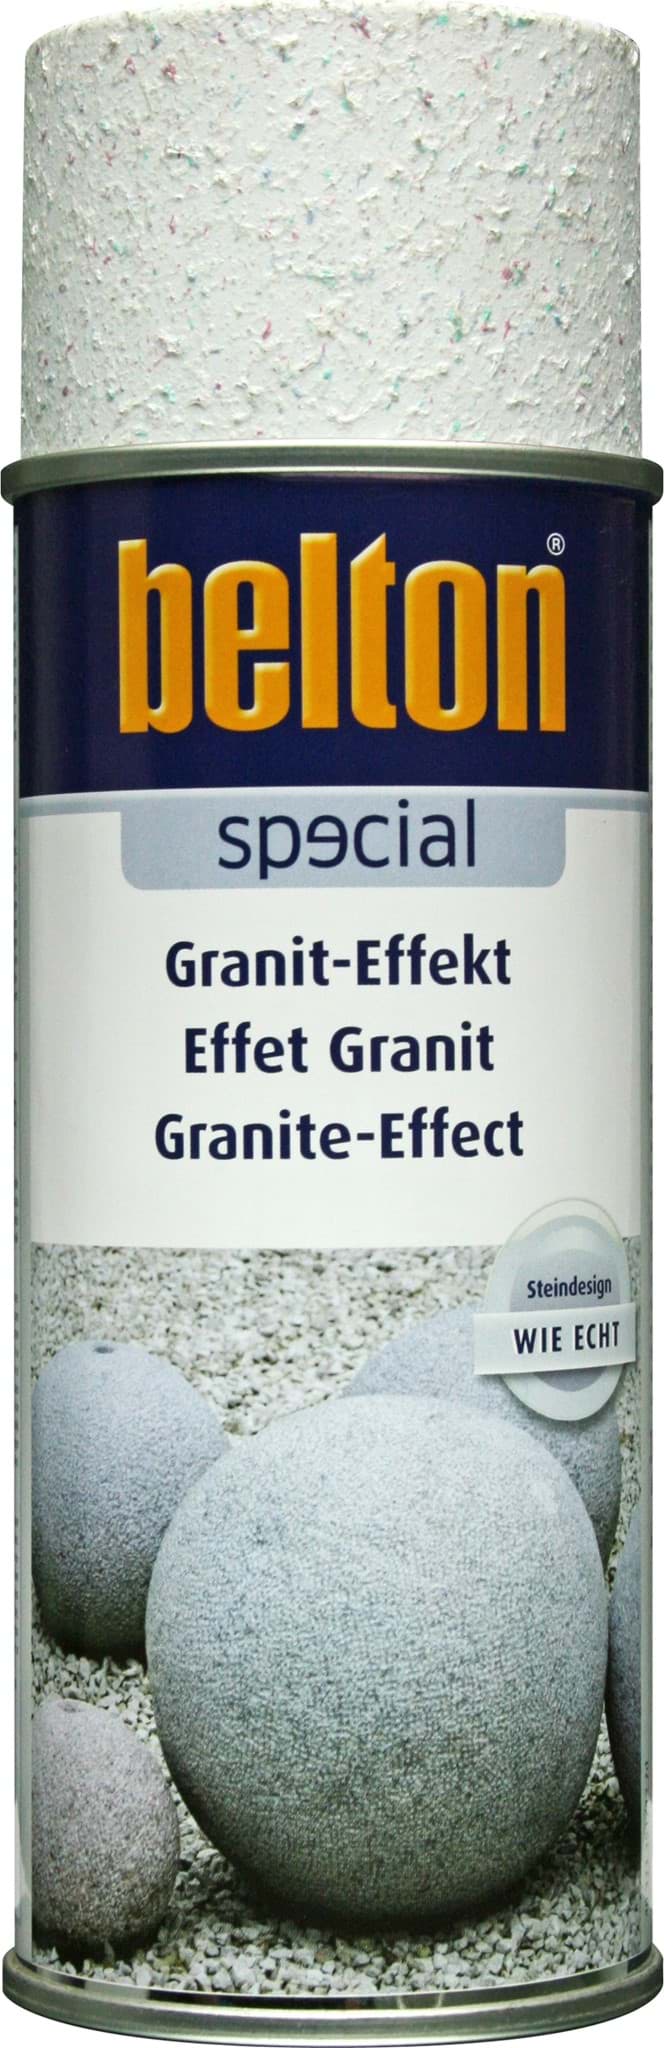 Afbeelding van Belton Special Lackspray Granit-Effekt weiss